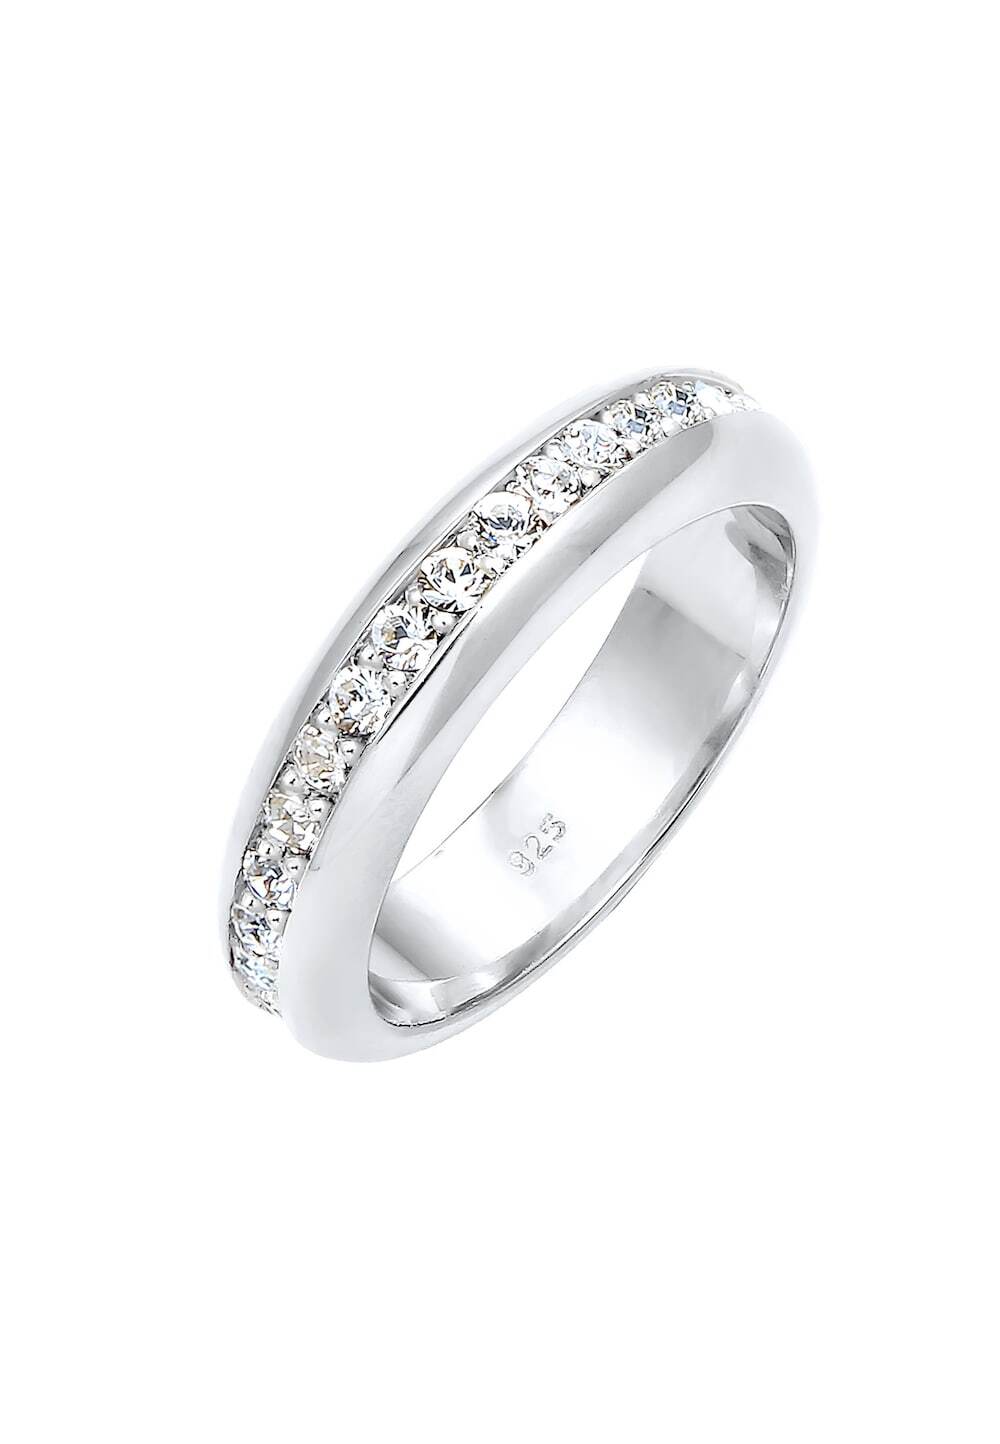 Elli PREMIUM Elli PREMIUM Elli PREMIUM Ring Dames Cocktail Ring met kristallen in 925 Sterling Zilver verguld Ringen